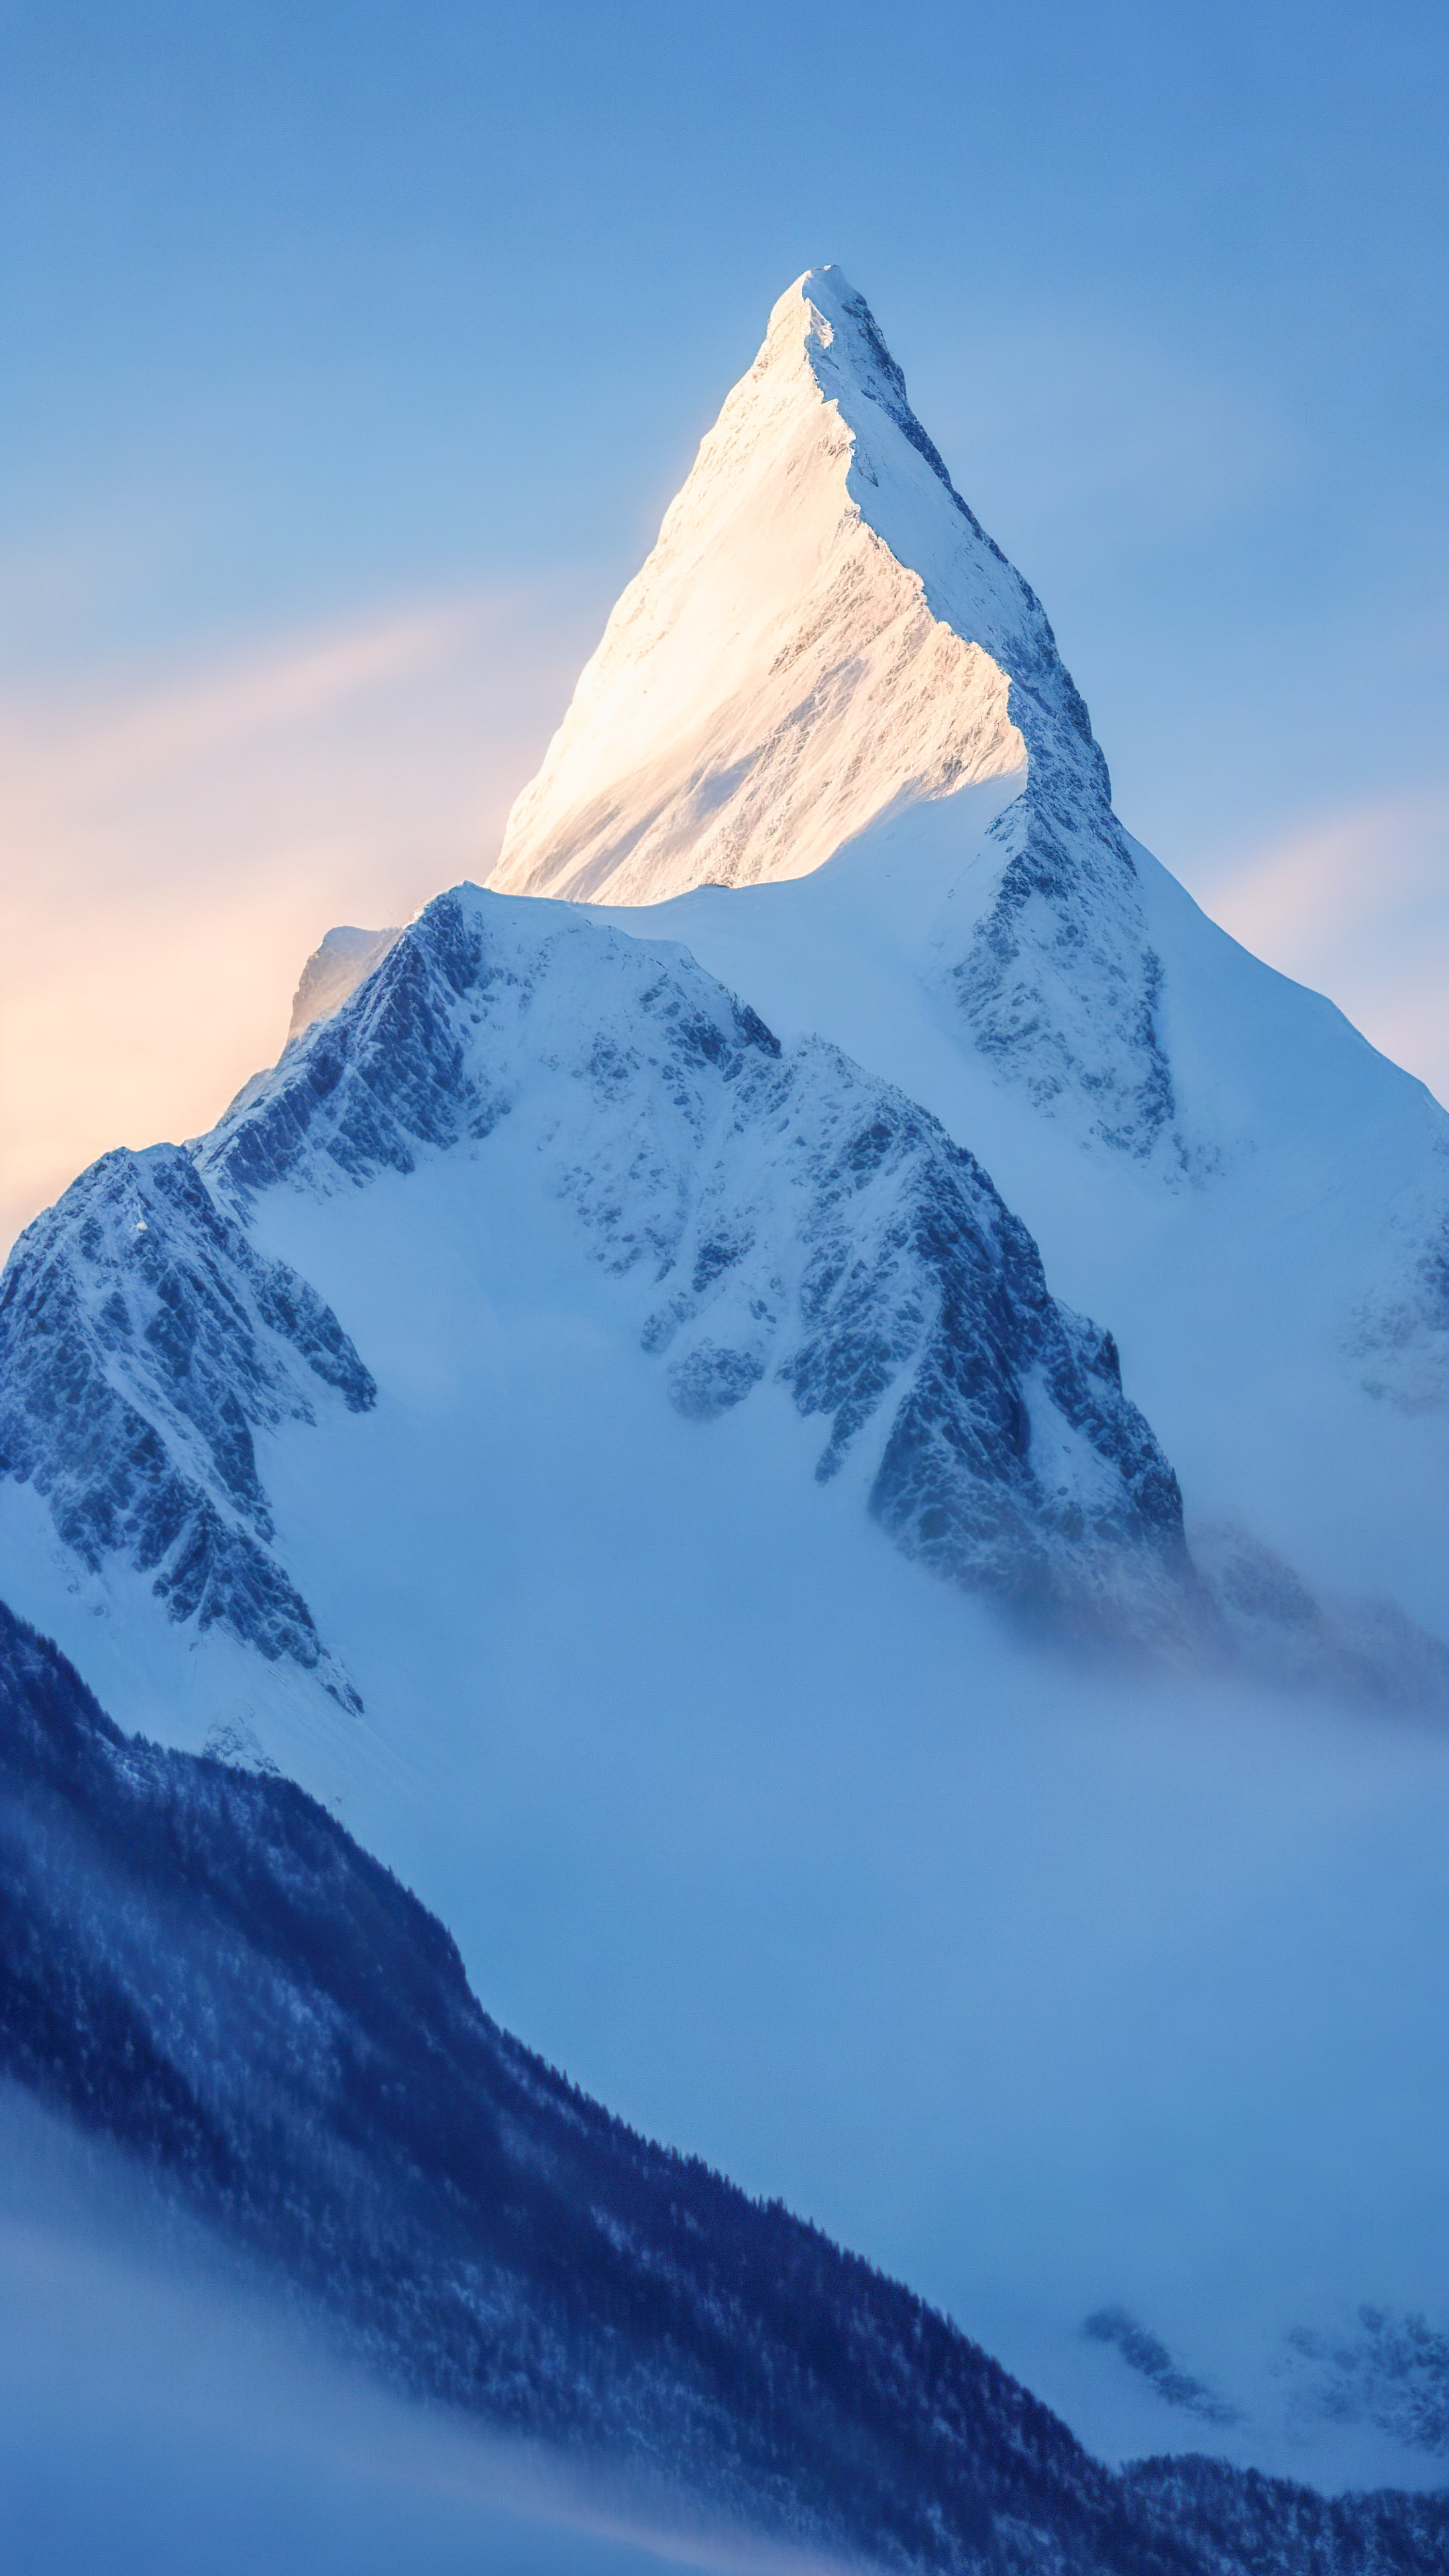 Capturez l'essence d'un pittoresque sommet de montagne embrassé par la première lumière de l'aube sous un ciel bleu pâle avec nos fonds d’écran de montagne en 4K pour votre iPhone.